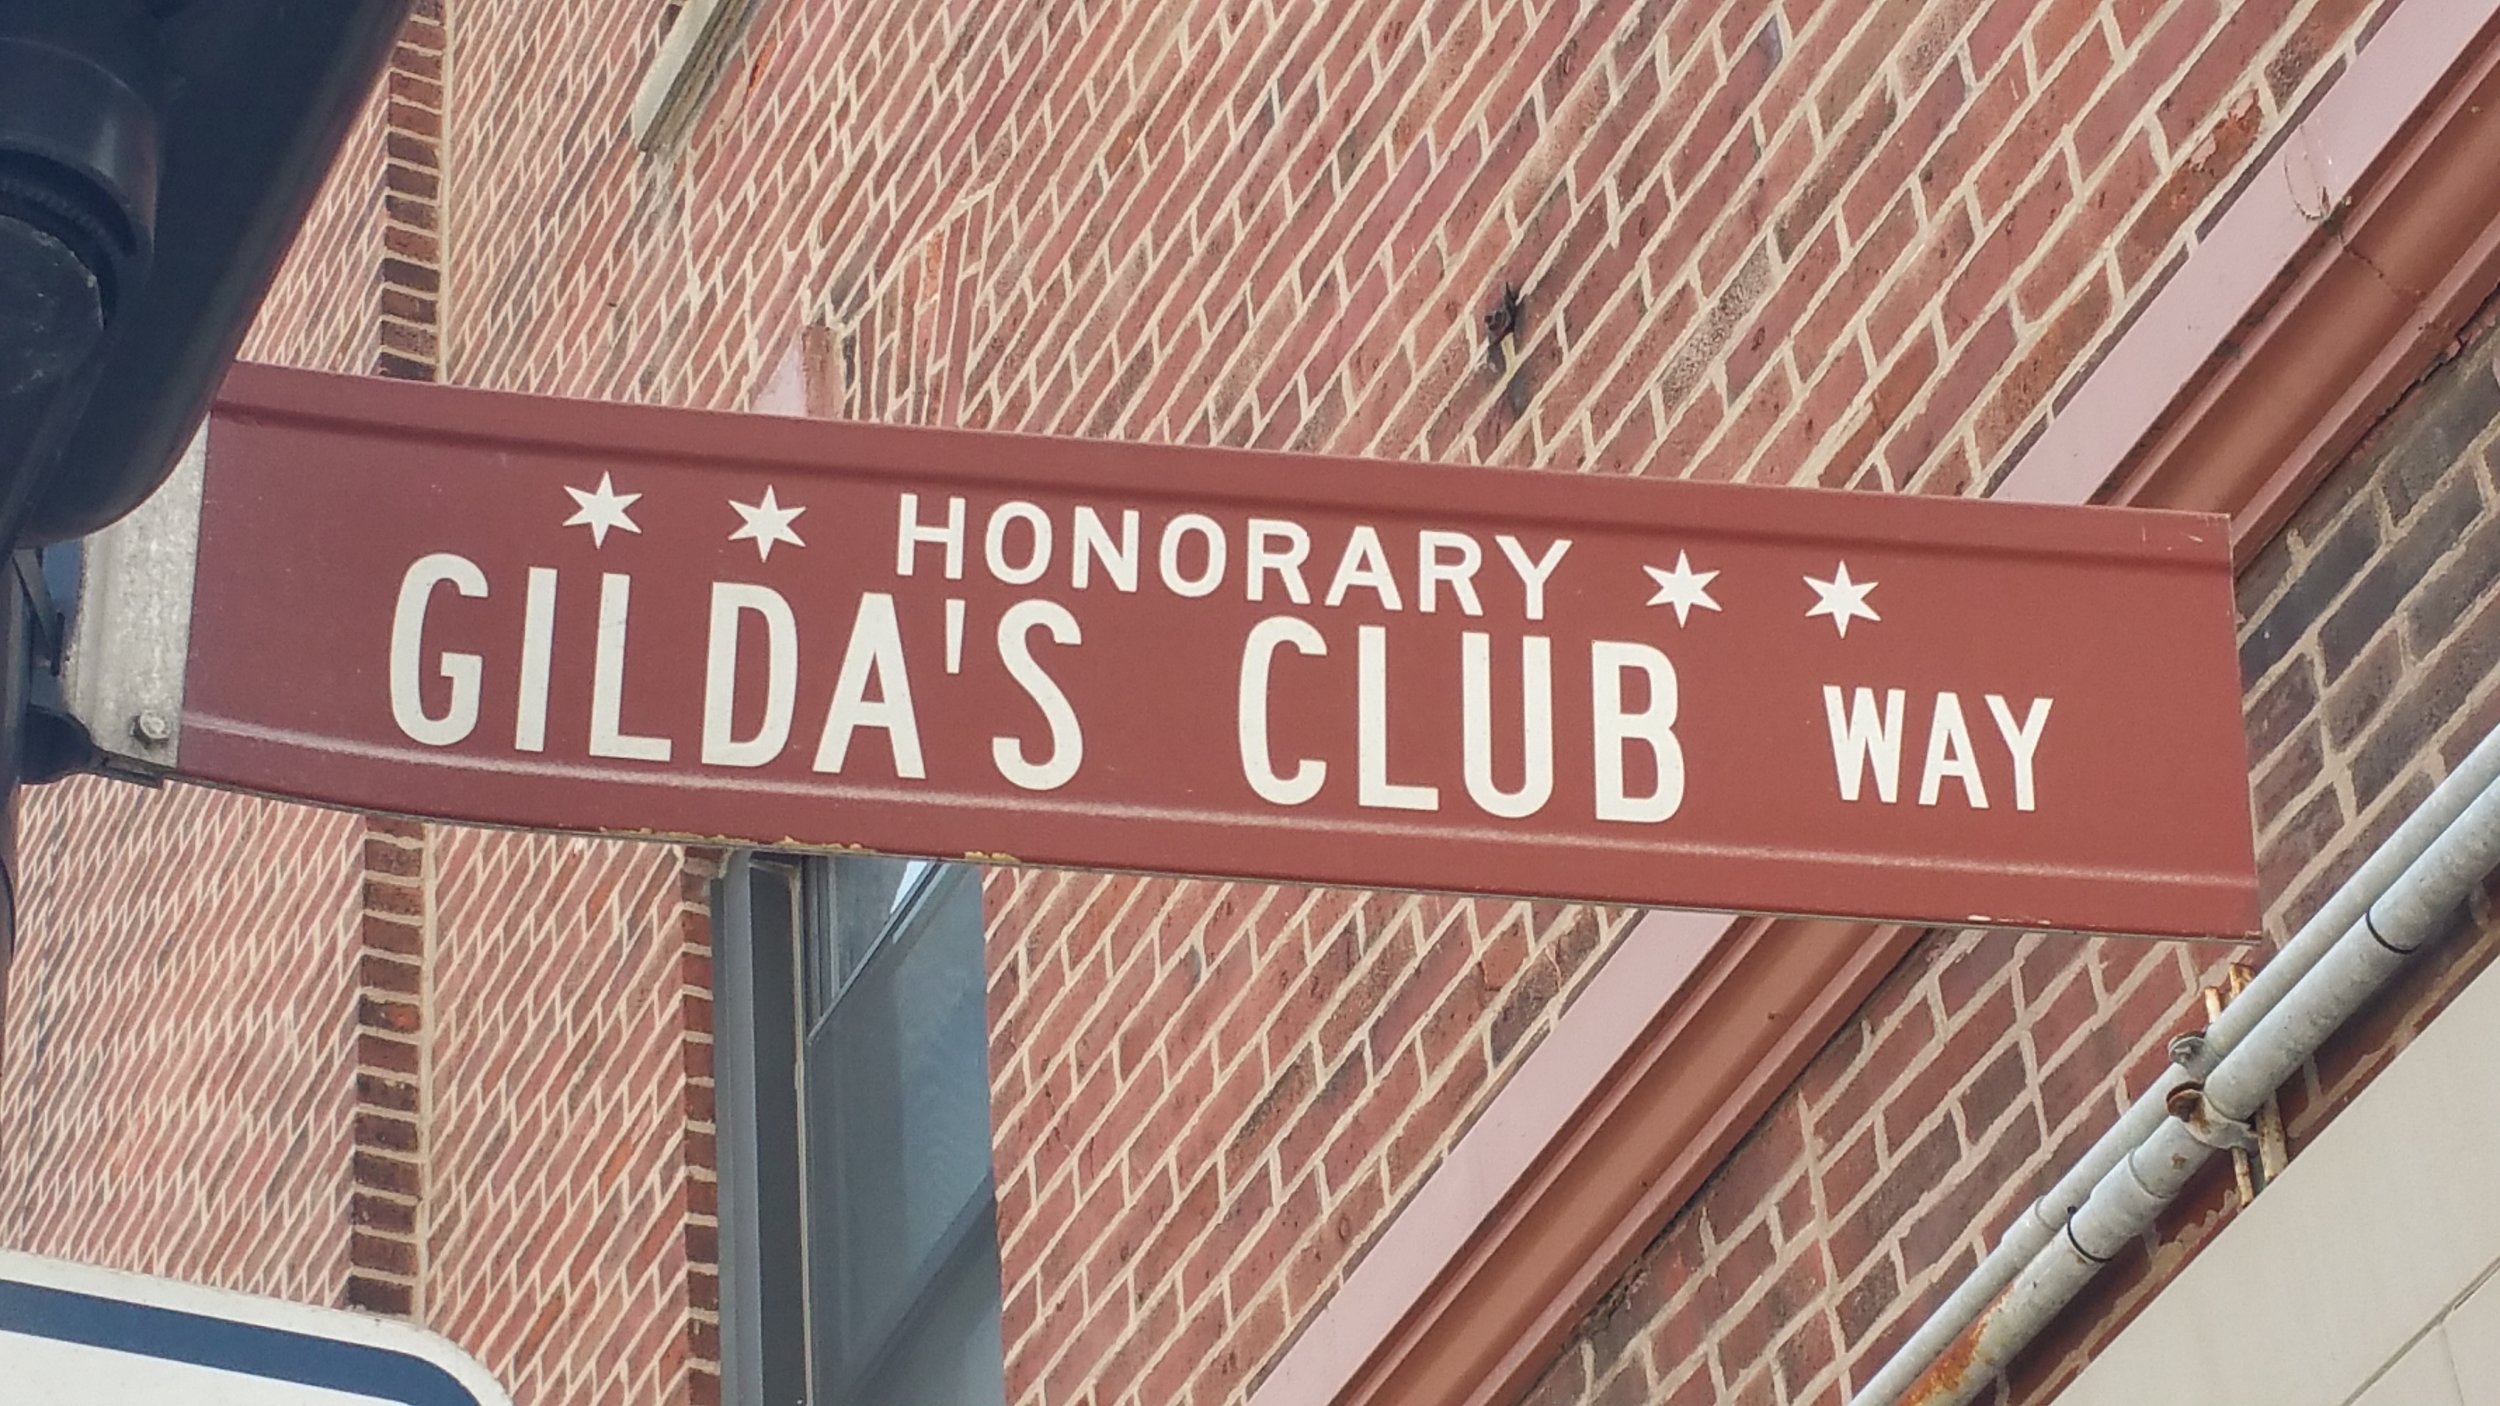 Gilda's Club - Gilda Radner club for cancer survivors - Honorary Chicago